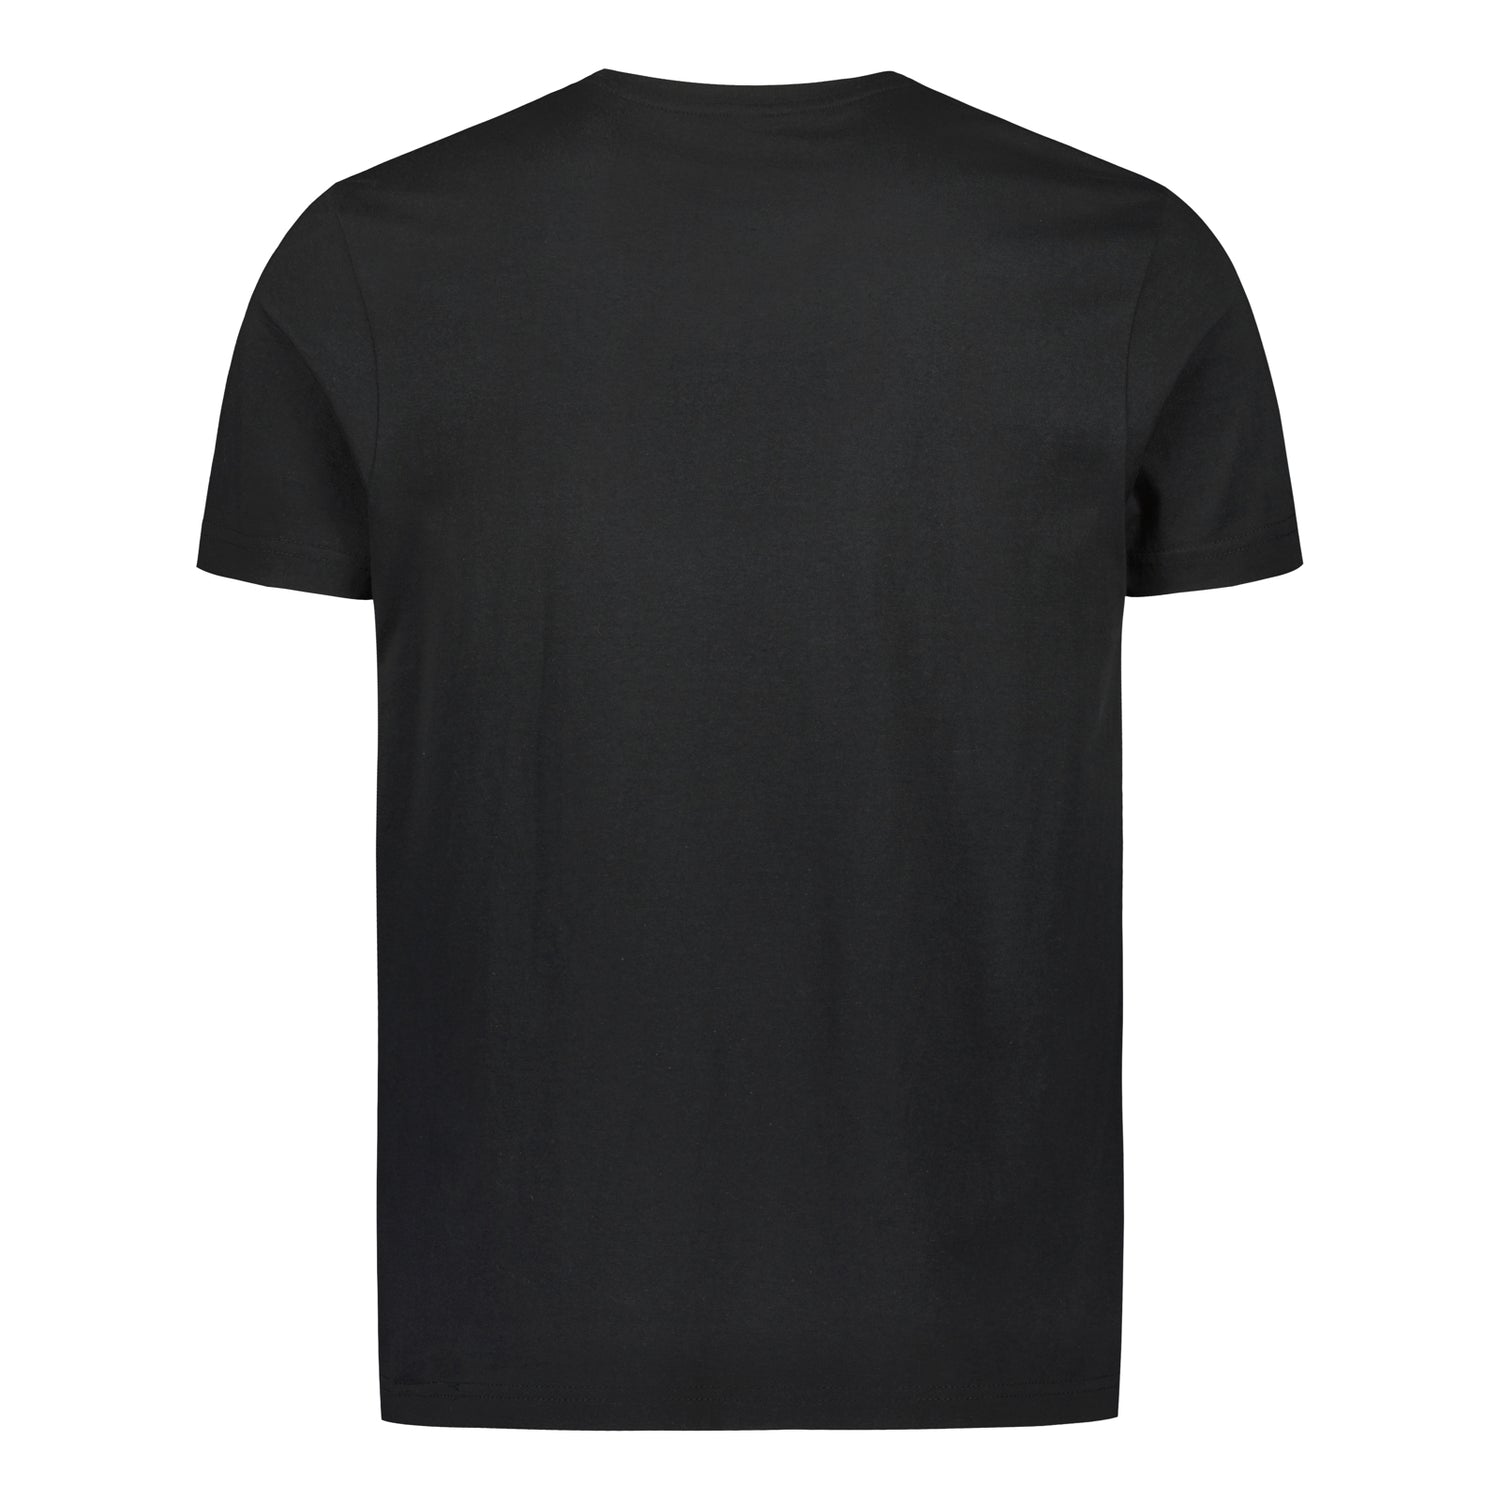 Tue paikallista jalkapalloa Black Edition t-paita, Musta